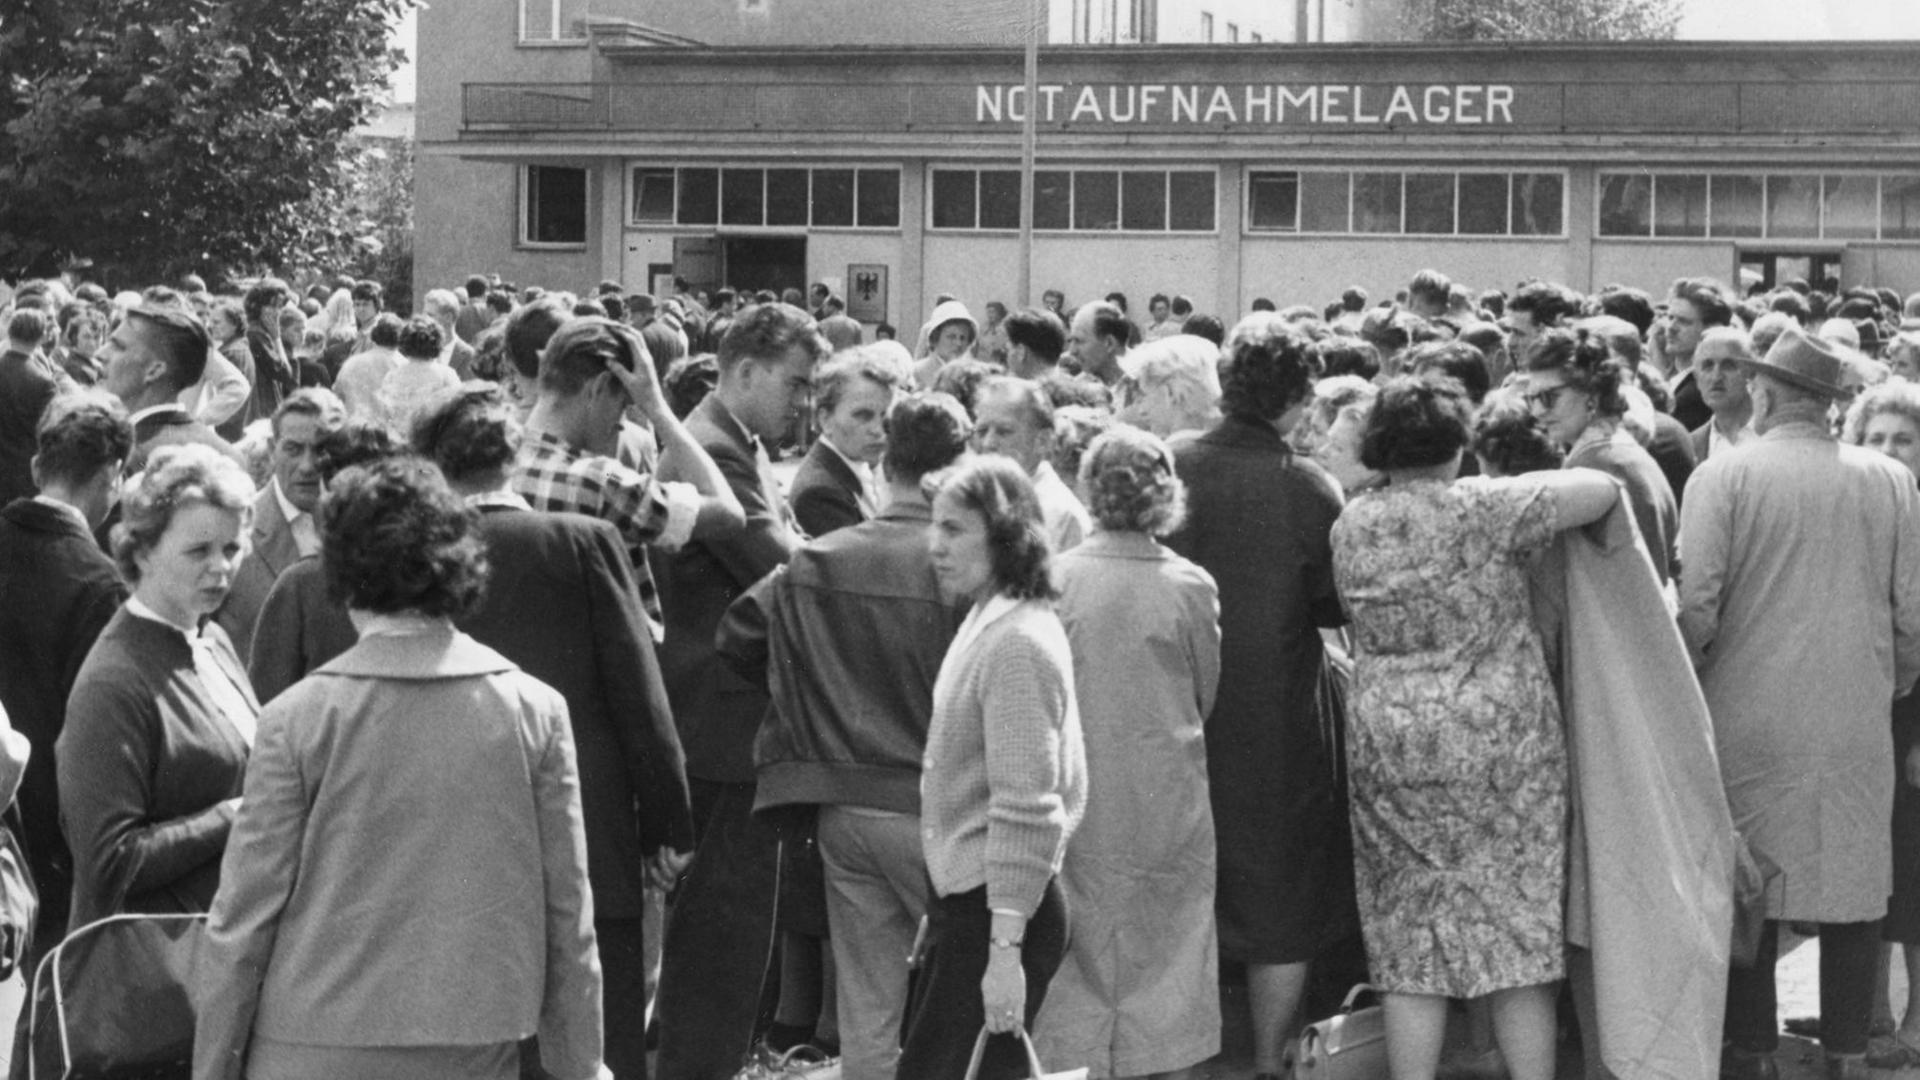 Der Flüchtlingsansturm auf das Notaufnahmelager Berlin-Marienfelde wurde am Montagvormittag, 14.08.1961, immer größer. Tausende von Neuangekommenen, die sich dort registrieren lassen wollten, warteten vor dem Eingang des Notaufnahmelagers. Sie wurden schubweise eingelassen. Die Aufnahmebehörden waren dem Ansturm nicht mehr gewachsen. Die Flüchtlinge wurden erneut aufgefordert, in den nächsten Tagen wiederzukommen.